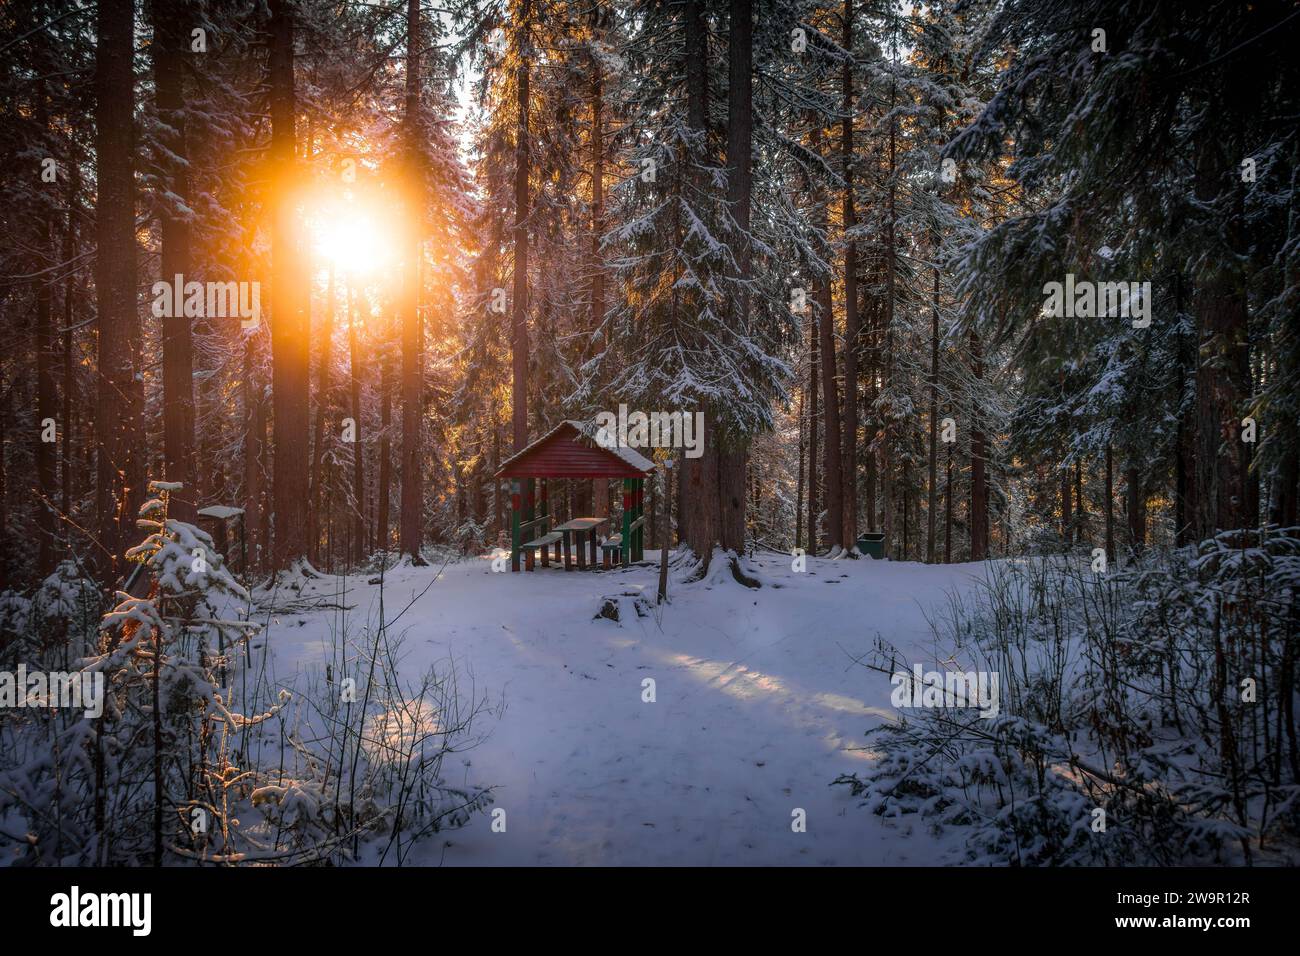 La piccola cabina nella foresta invernale con alberi di pino innevati con i colori del tramonto nella taiga siberiana a Khanty-Mansiysk, Russia. Foto Stock